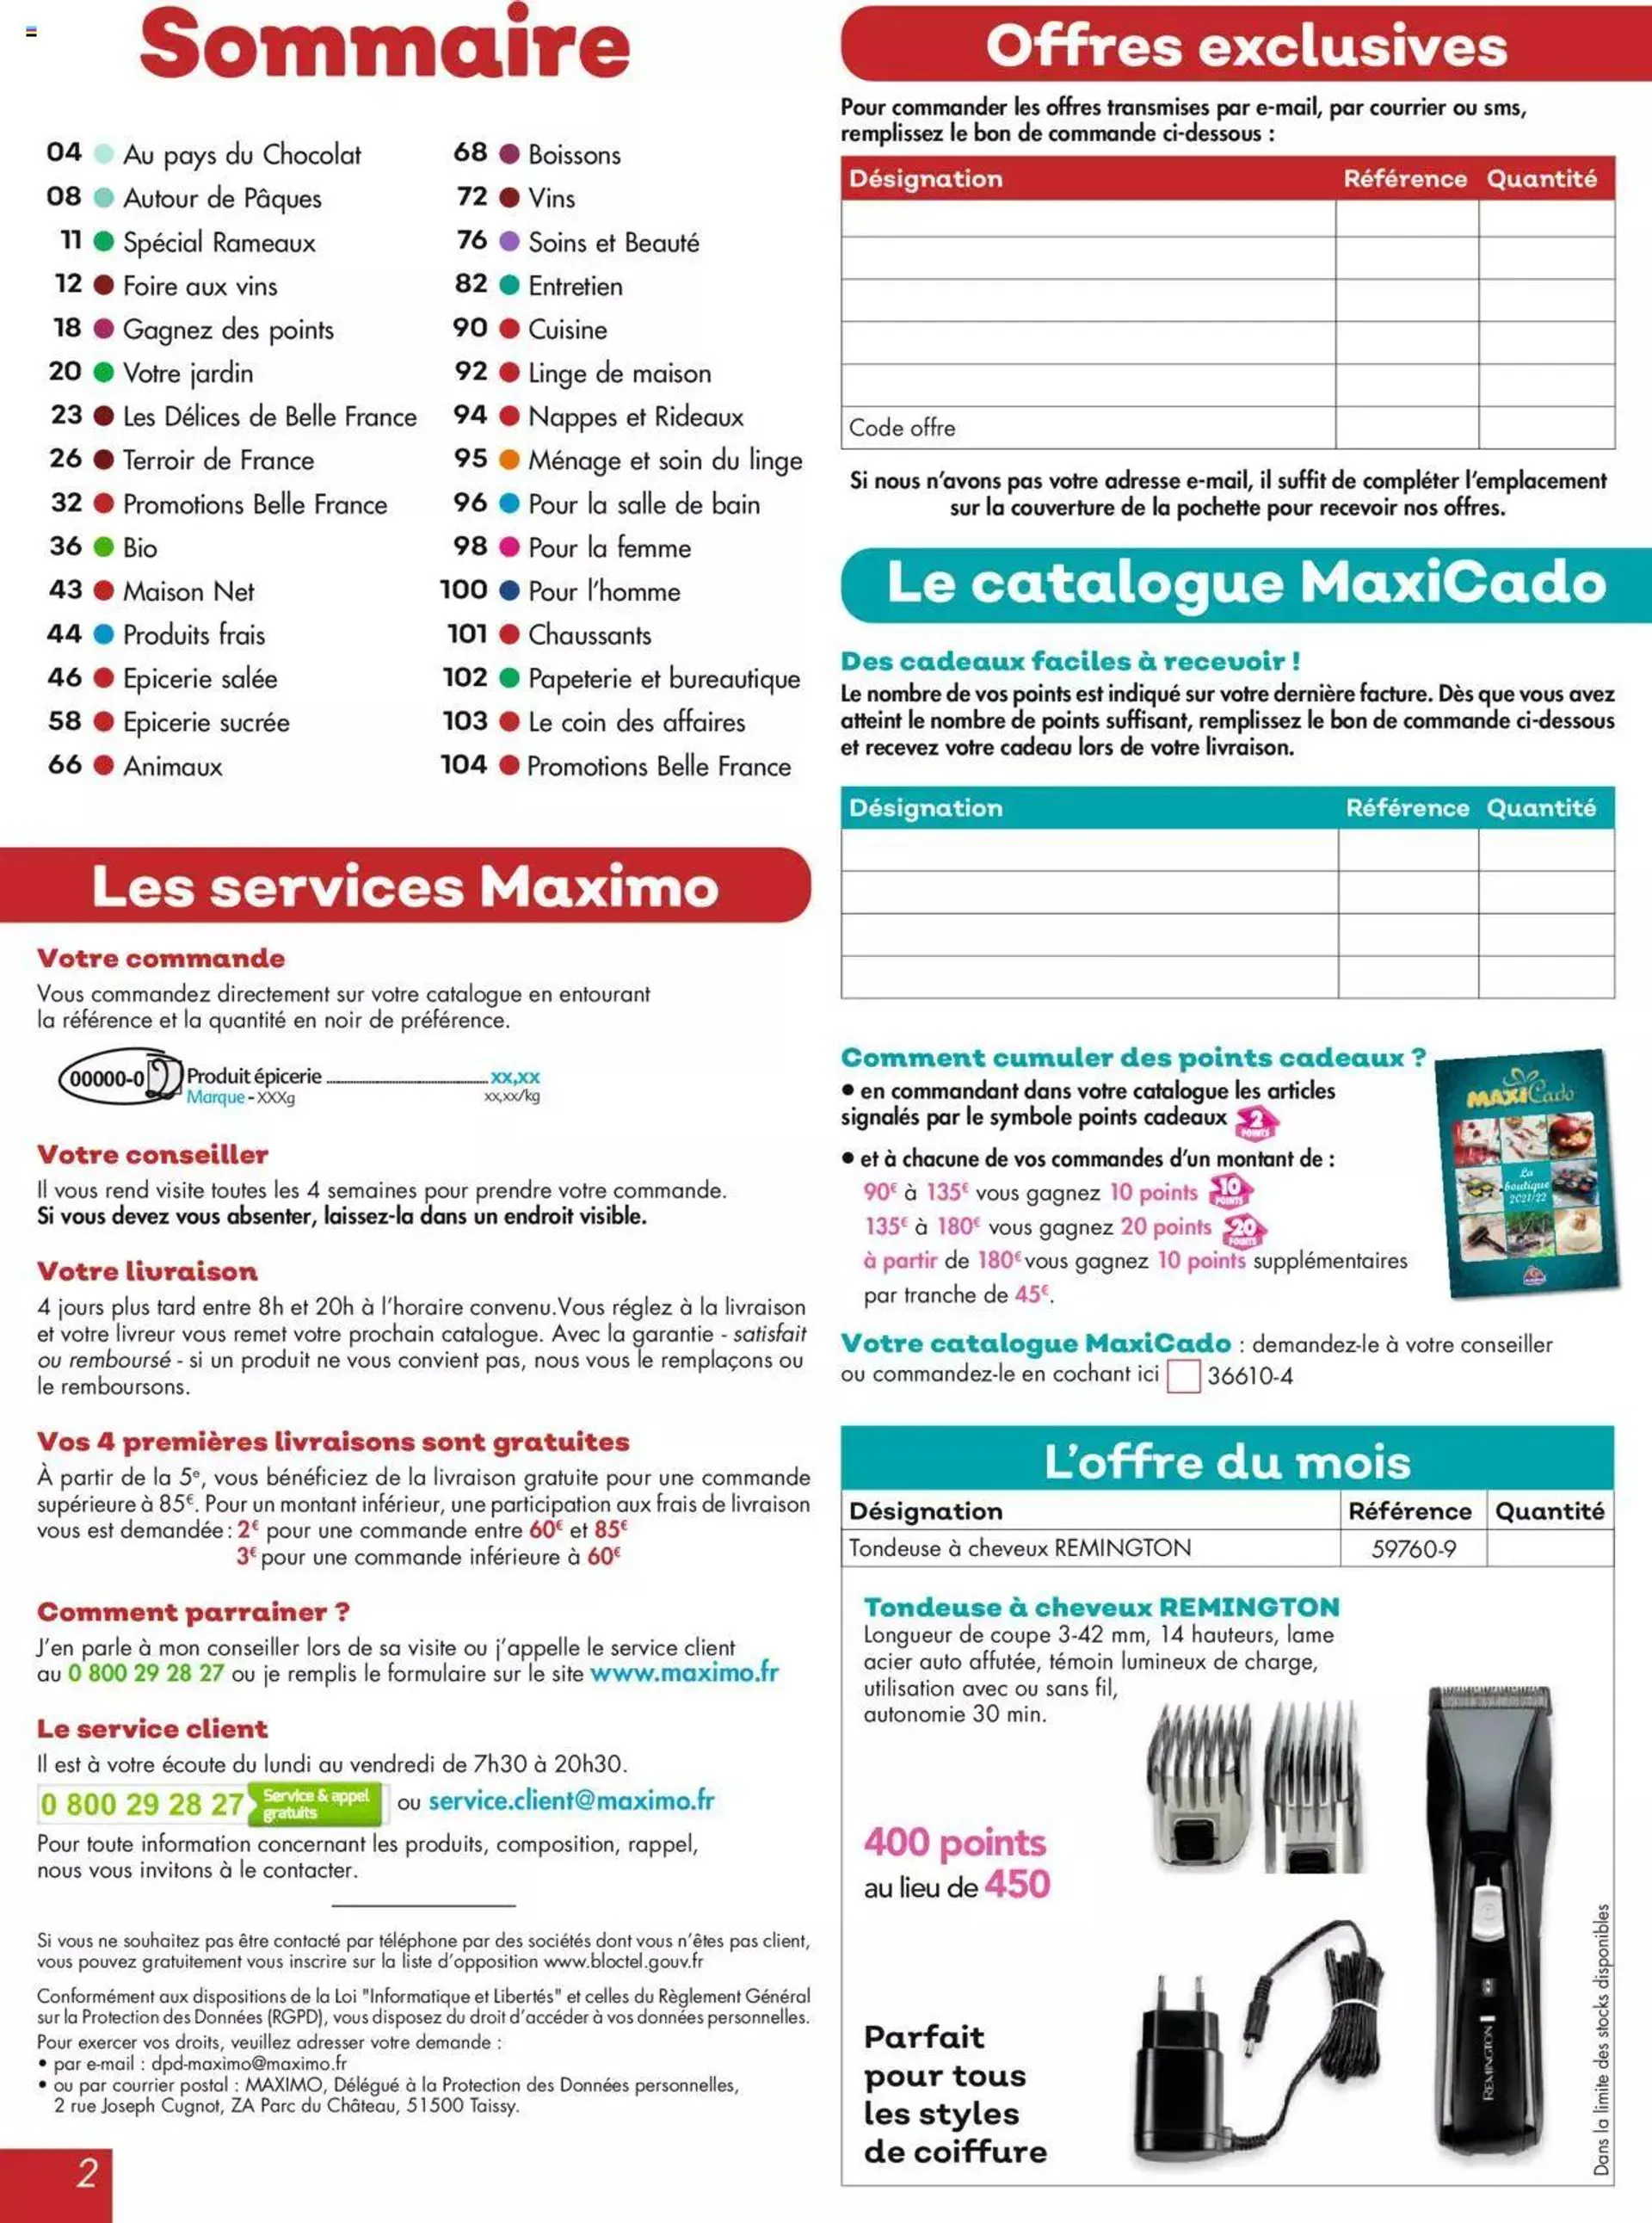 Maximo Catalogue - 1